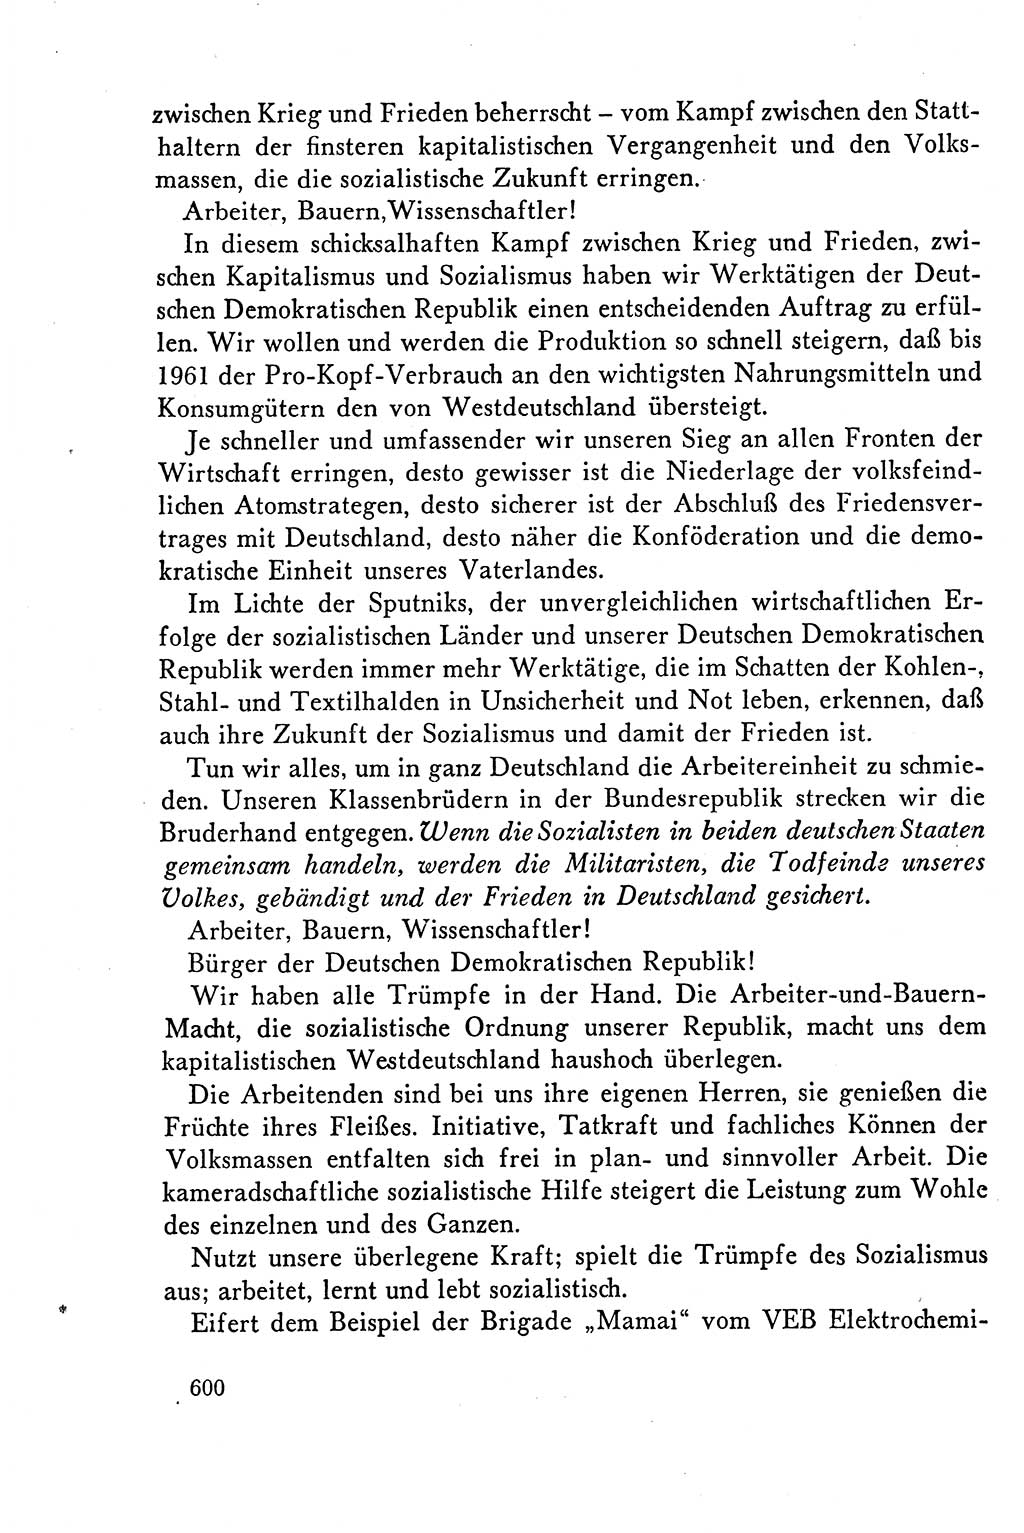 Dokumente der Sozialistischen Einheitspartei Deutschlands (SED) [Deutsche Demokratische Republik (DDR)] 1958-1959, Seite 600 (Dok. SED DDR 1958-1959, S. 600)